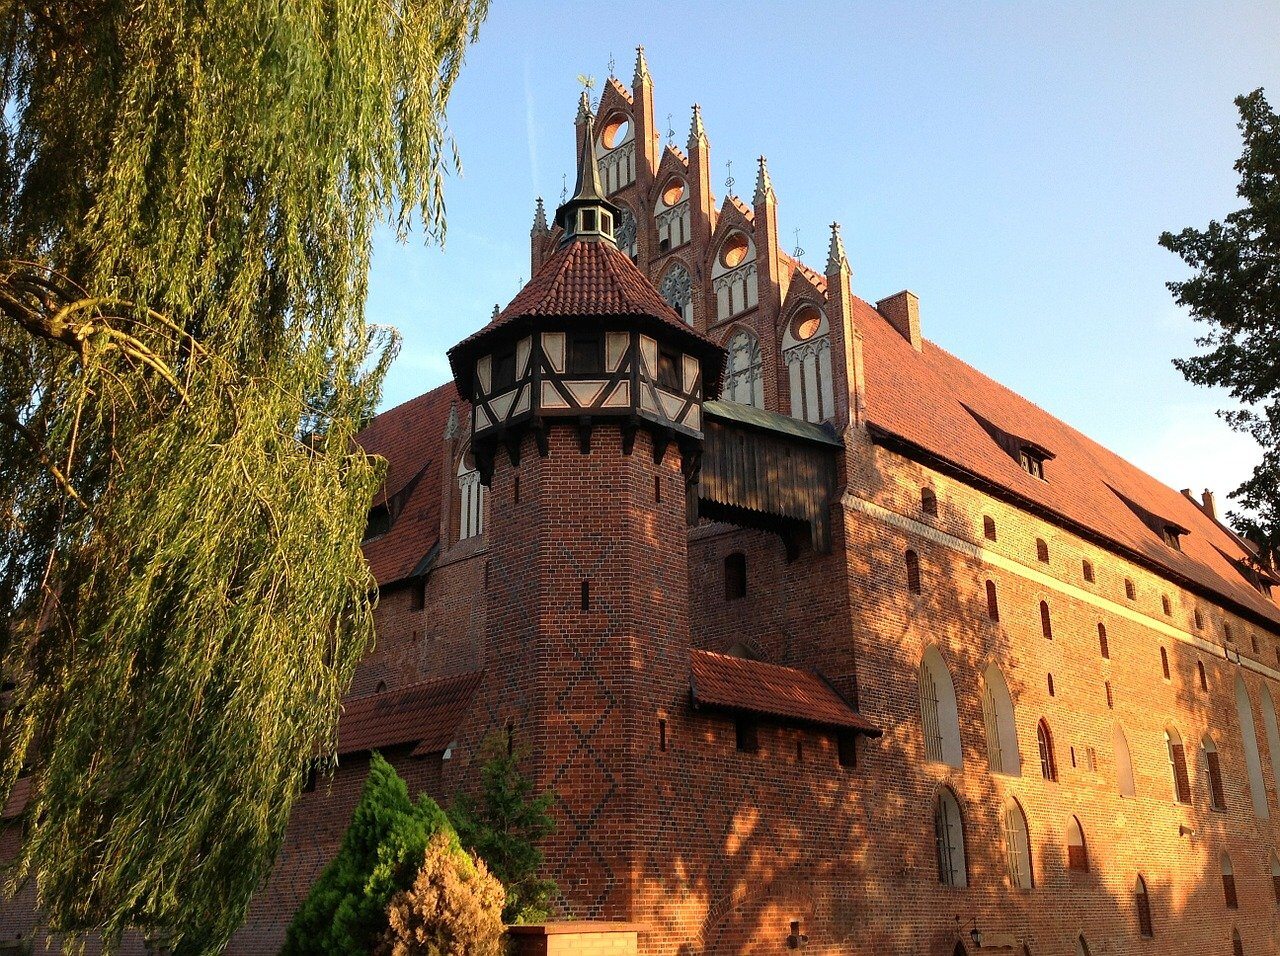 Poniższa fotografia pokazuje zamek w Malborku.